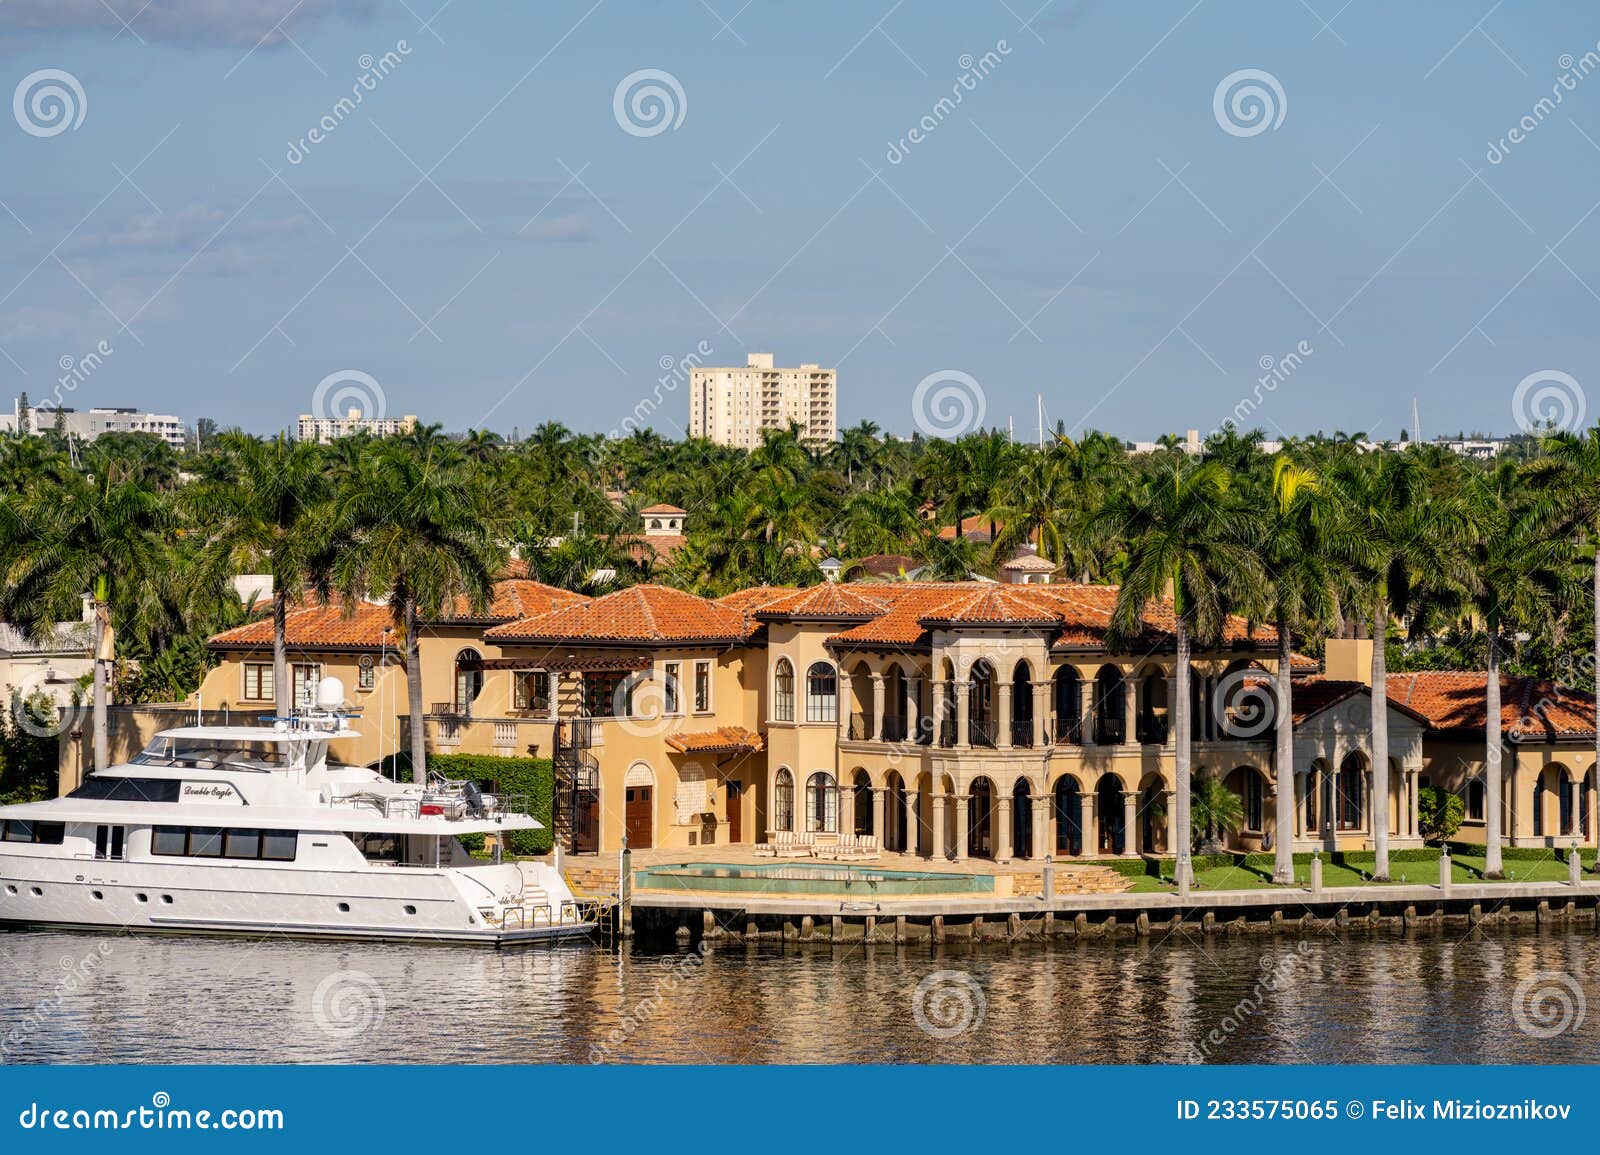 mansion yacht rental price florida keys